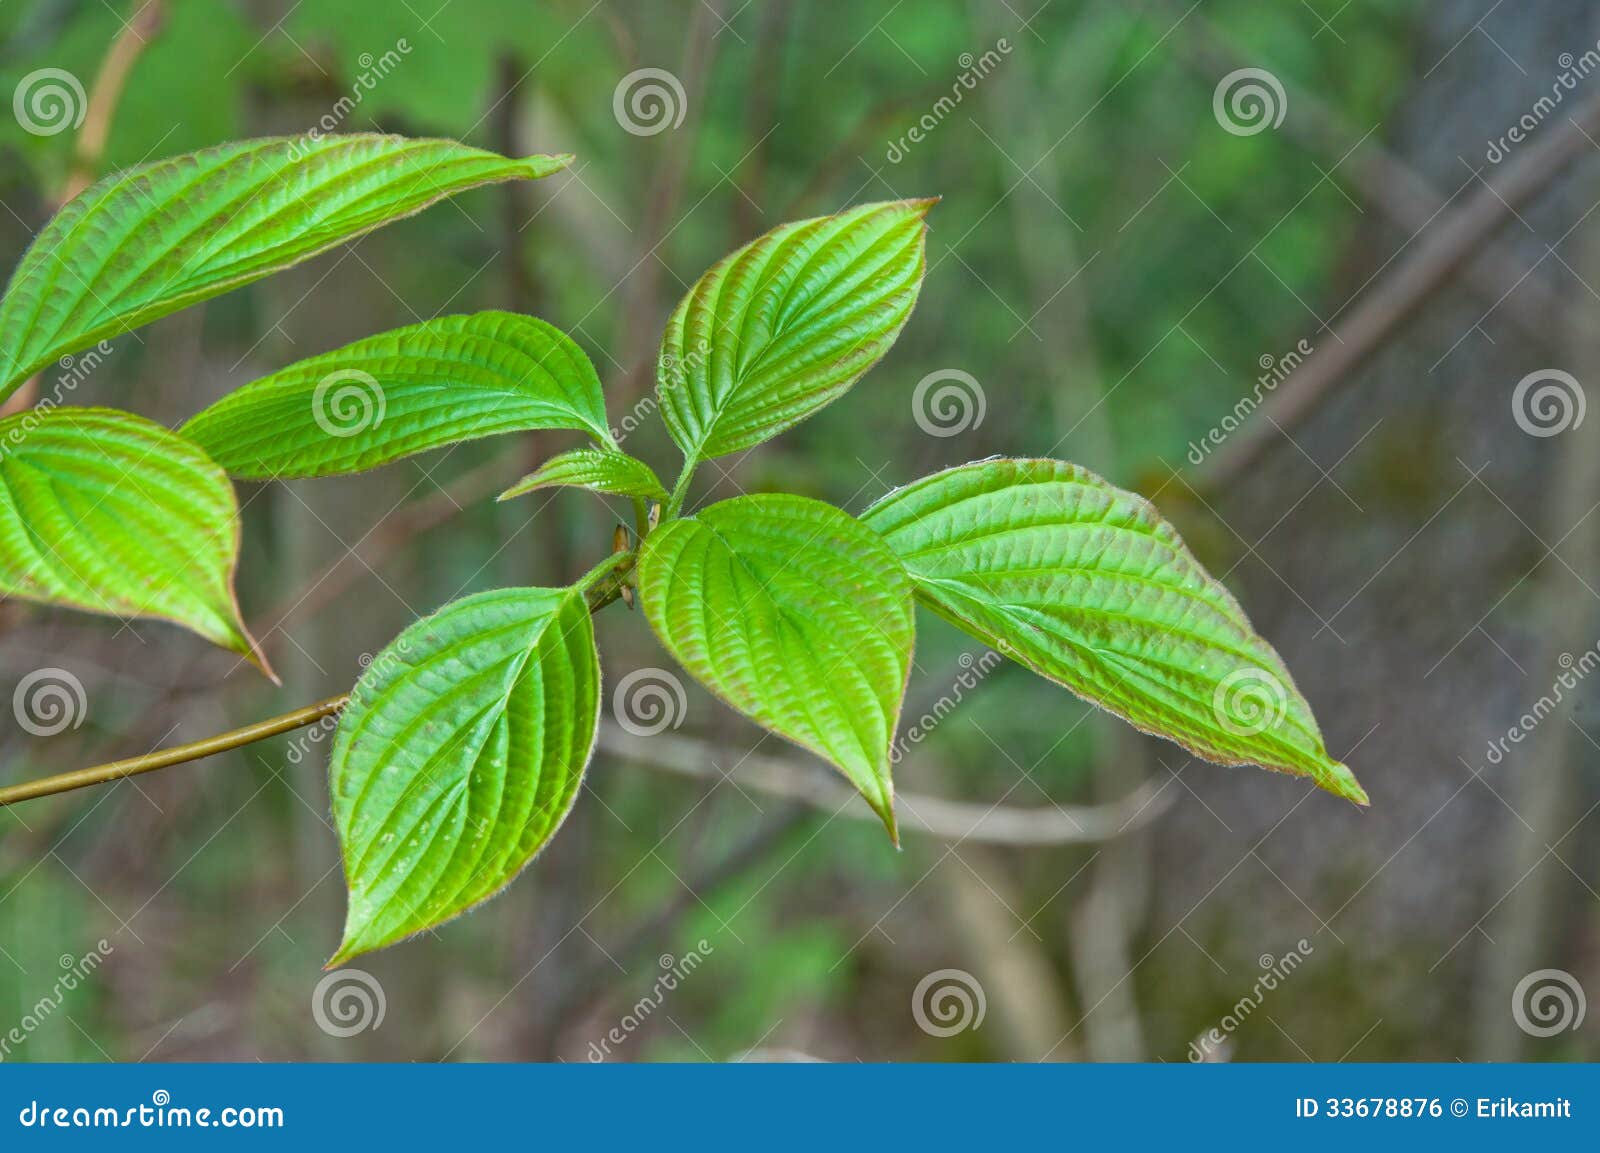 alternate-leafed dogwood leaves